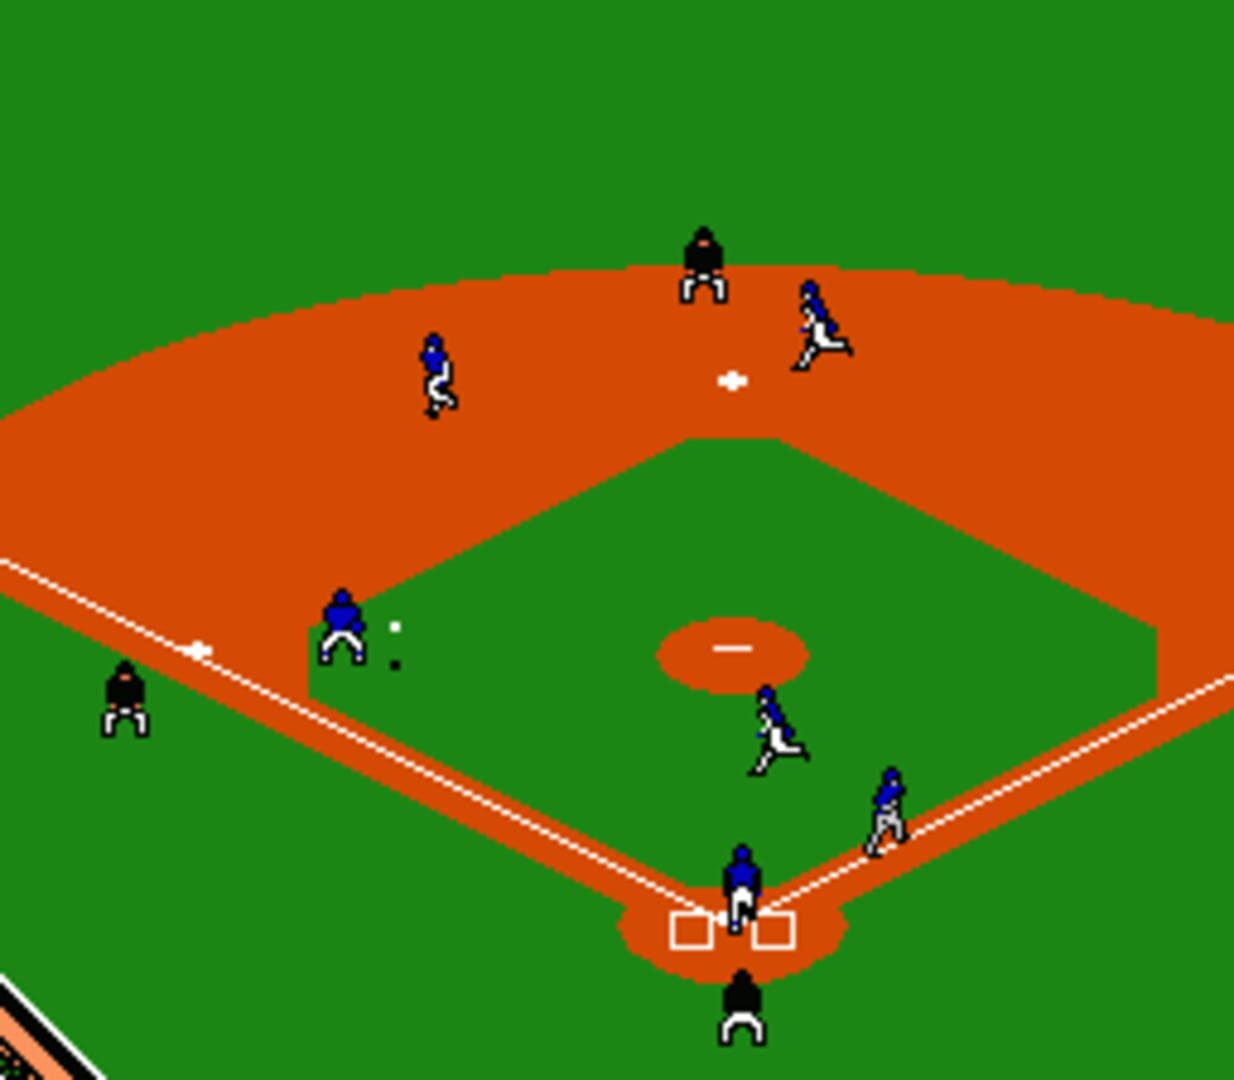 Captura de pantalla - R.B.I. Baseball 2